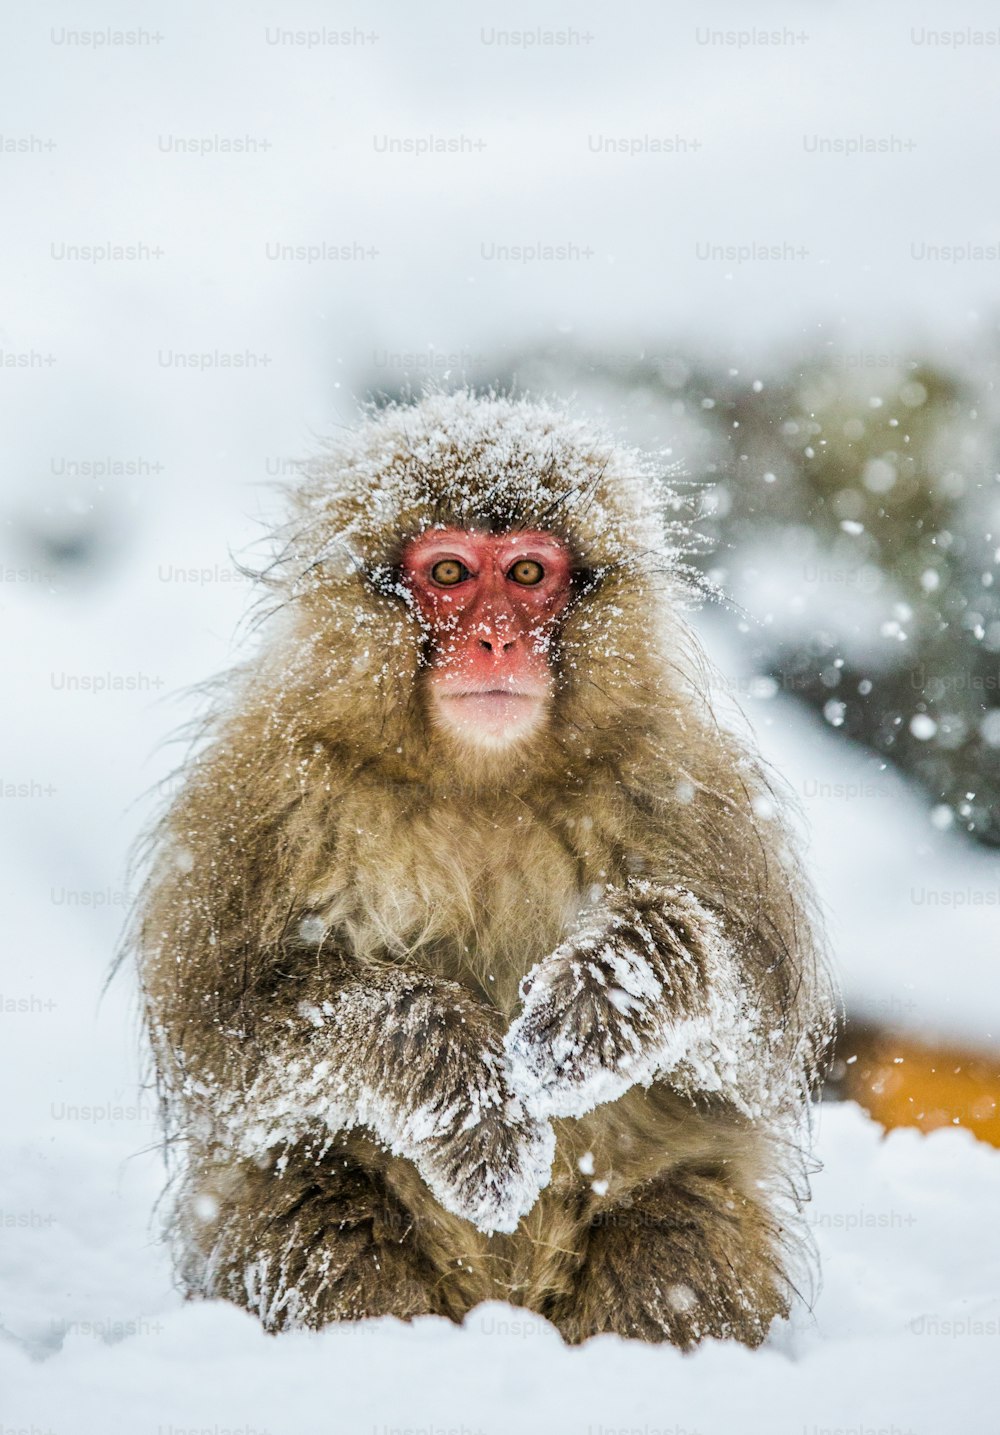 Macaco japonés sentado en la nieve. Japón. Nagano. Parque de los Monos de Jigokudani. Una excelente ilustración.